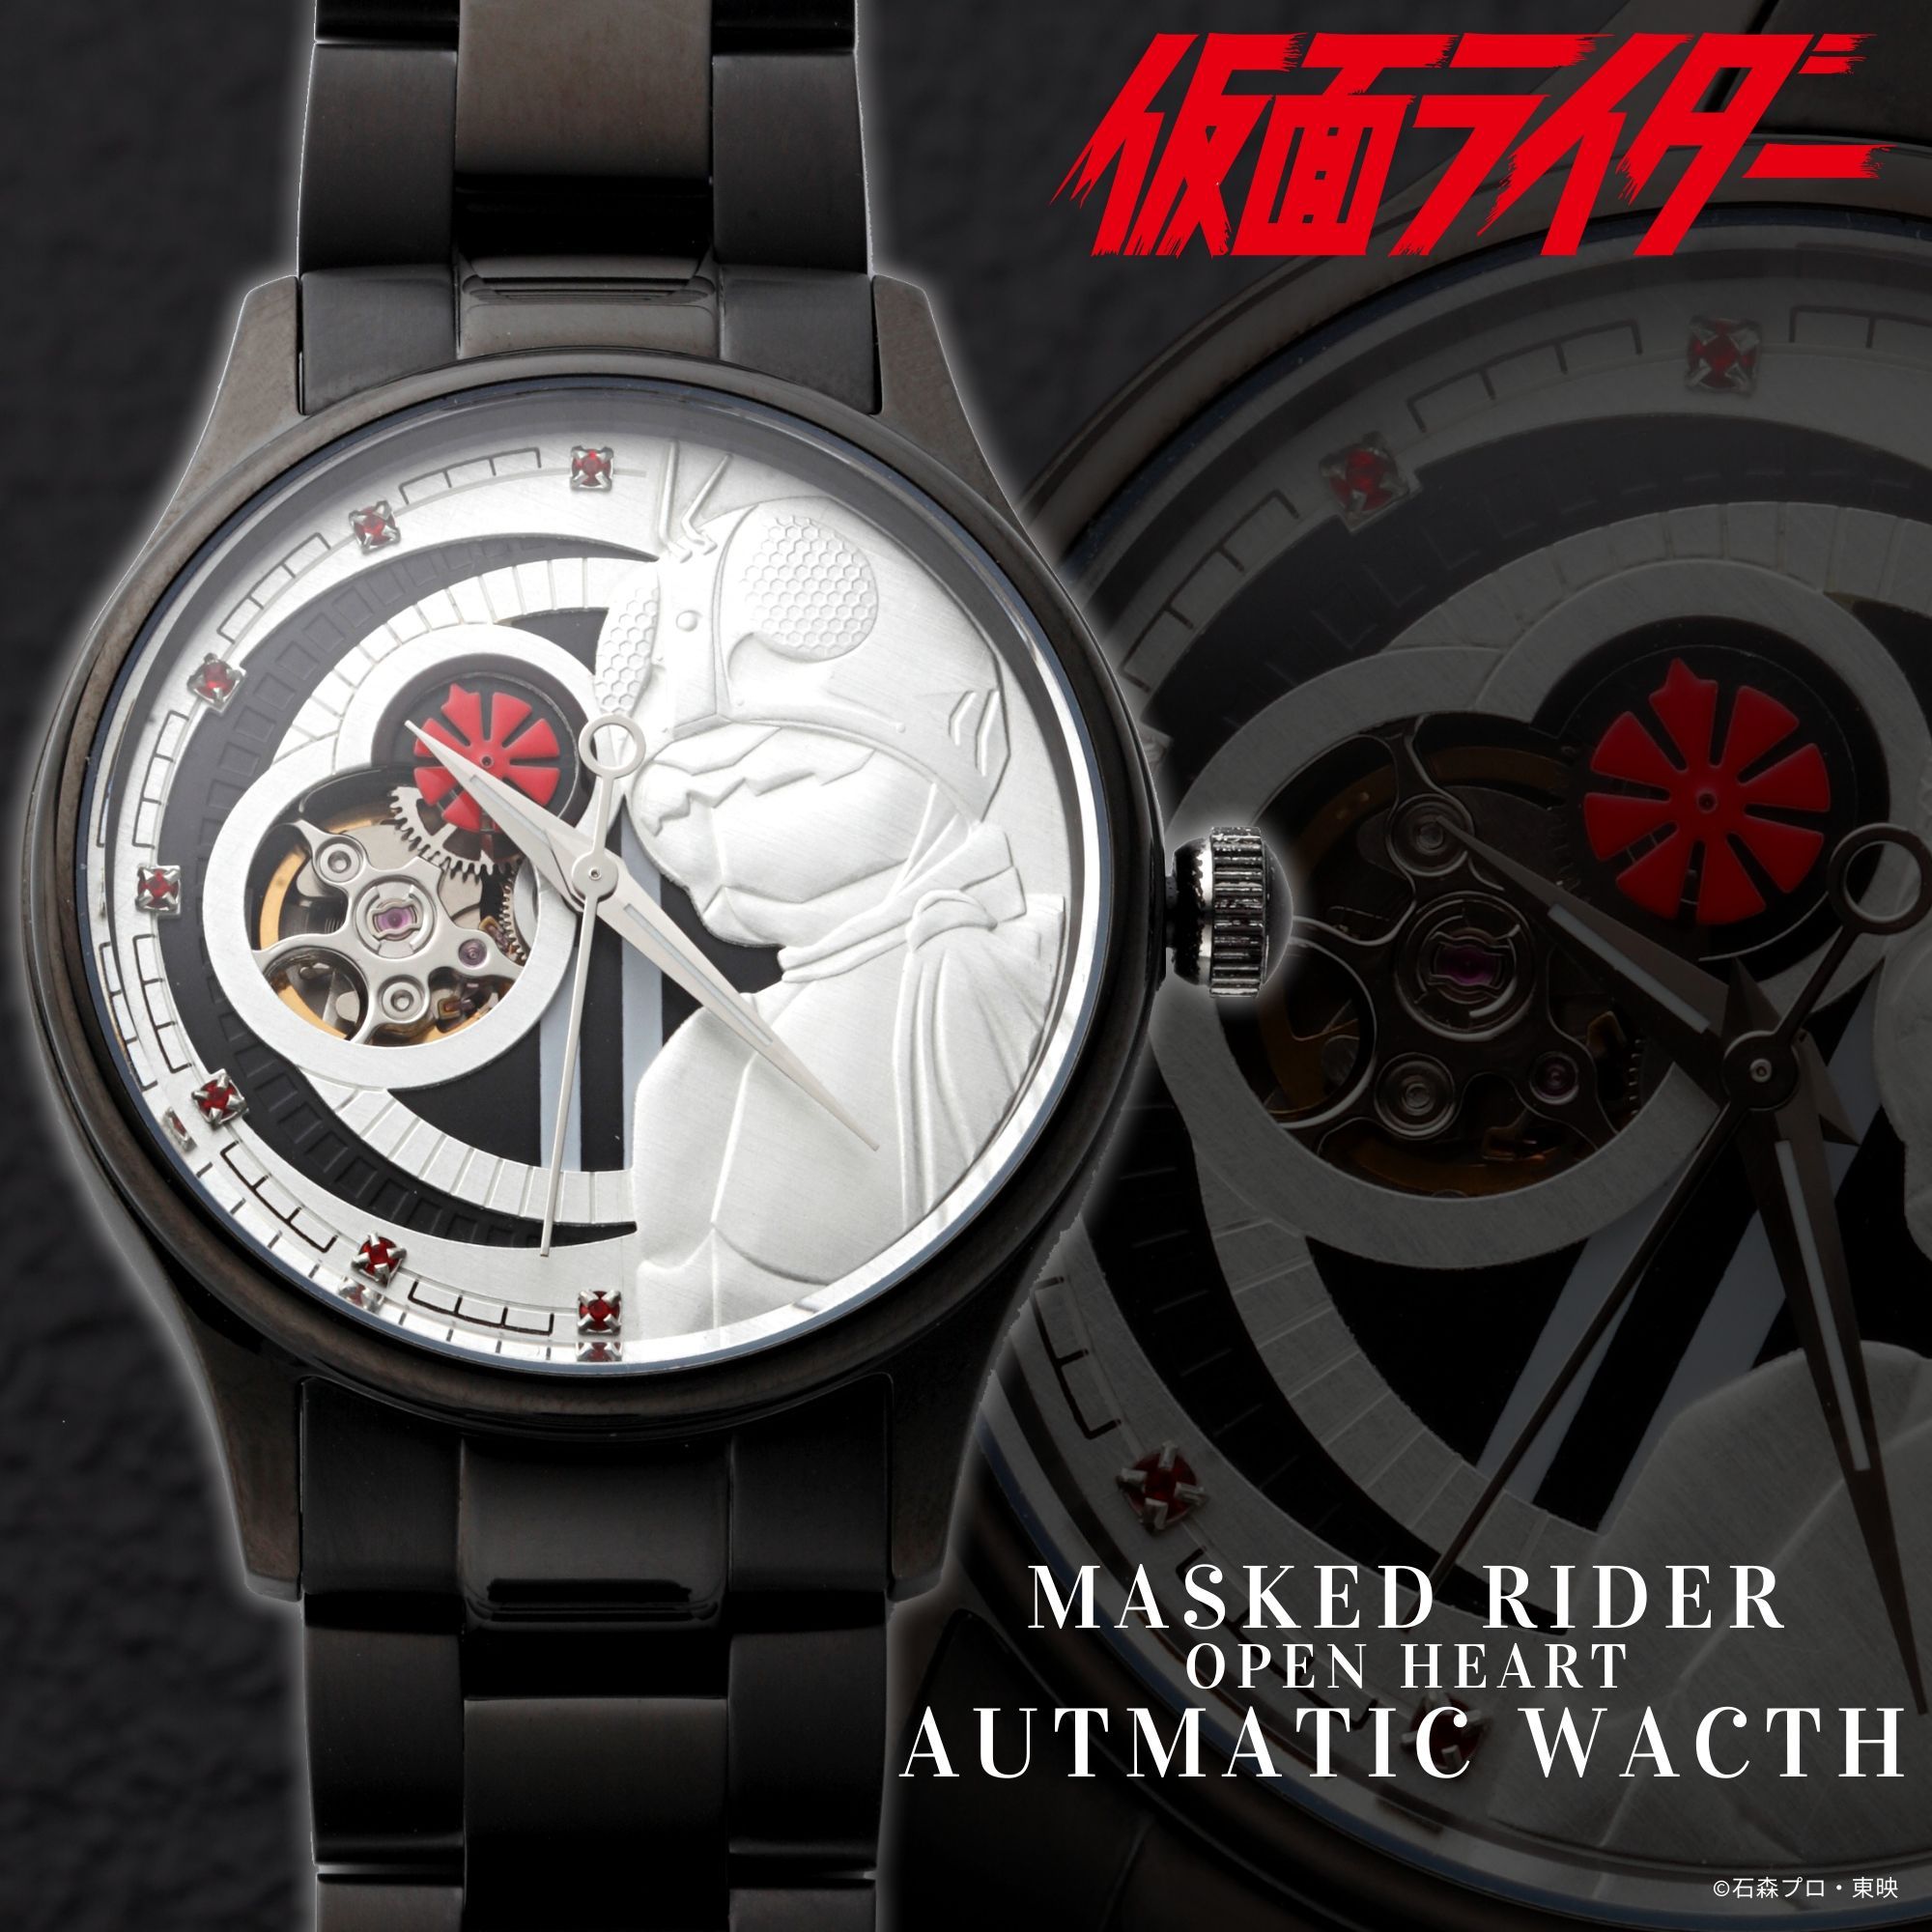 Rider Wrist Watch